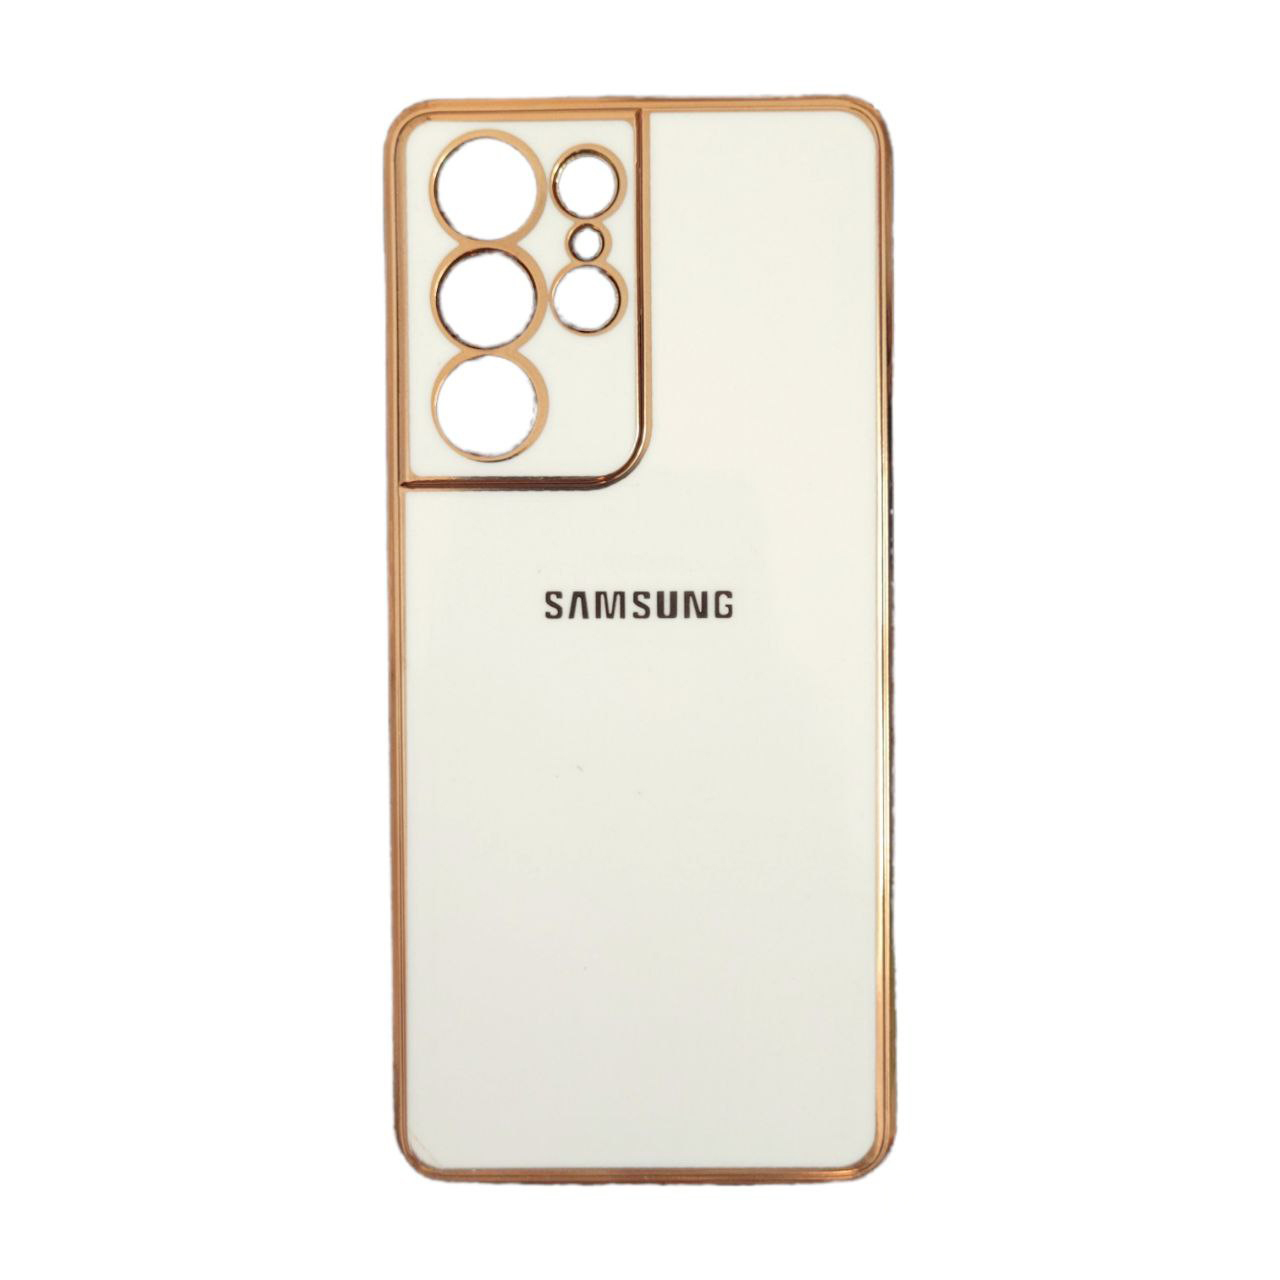   کاور یونیک مدل Combat مناسب برای گوشی موبایل سامسونگ Galaxy S21 Ultra